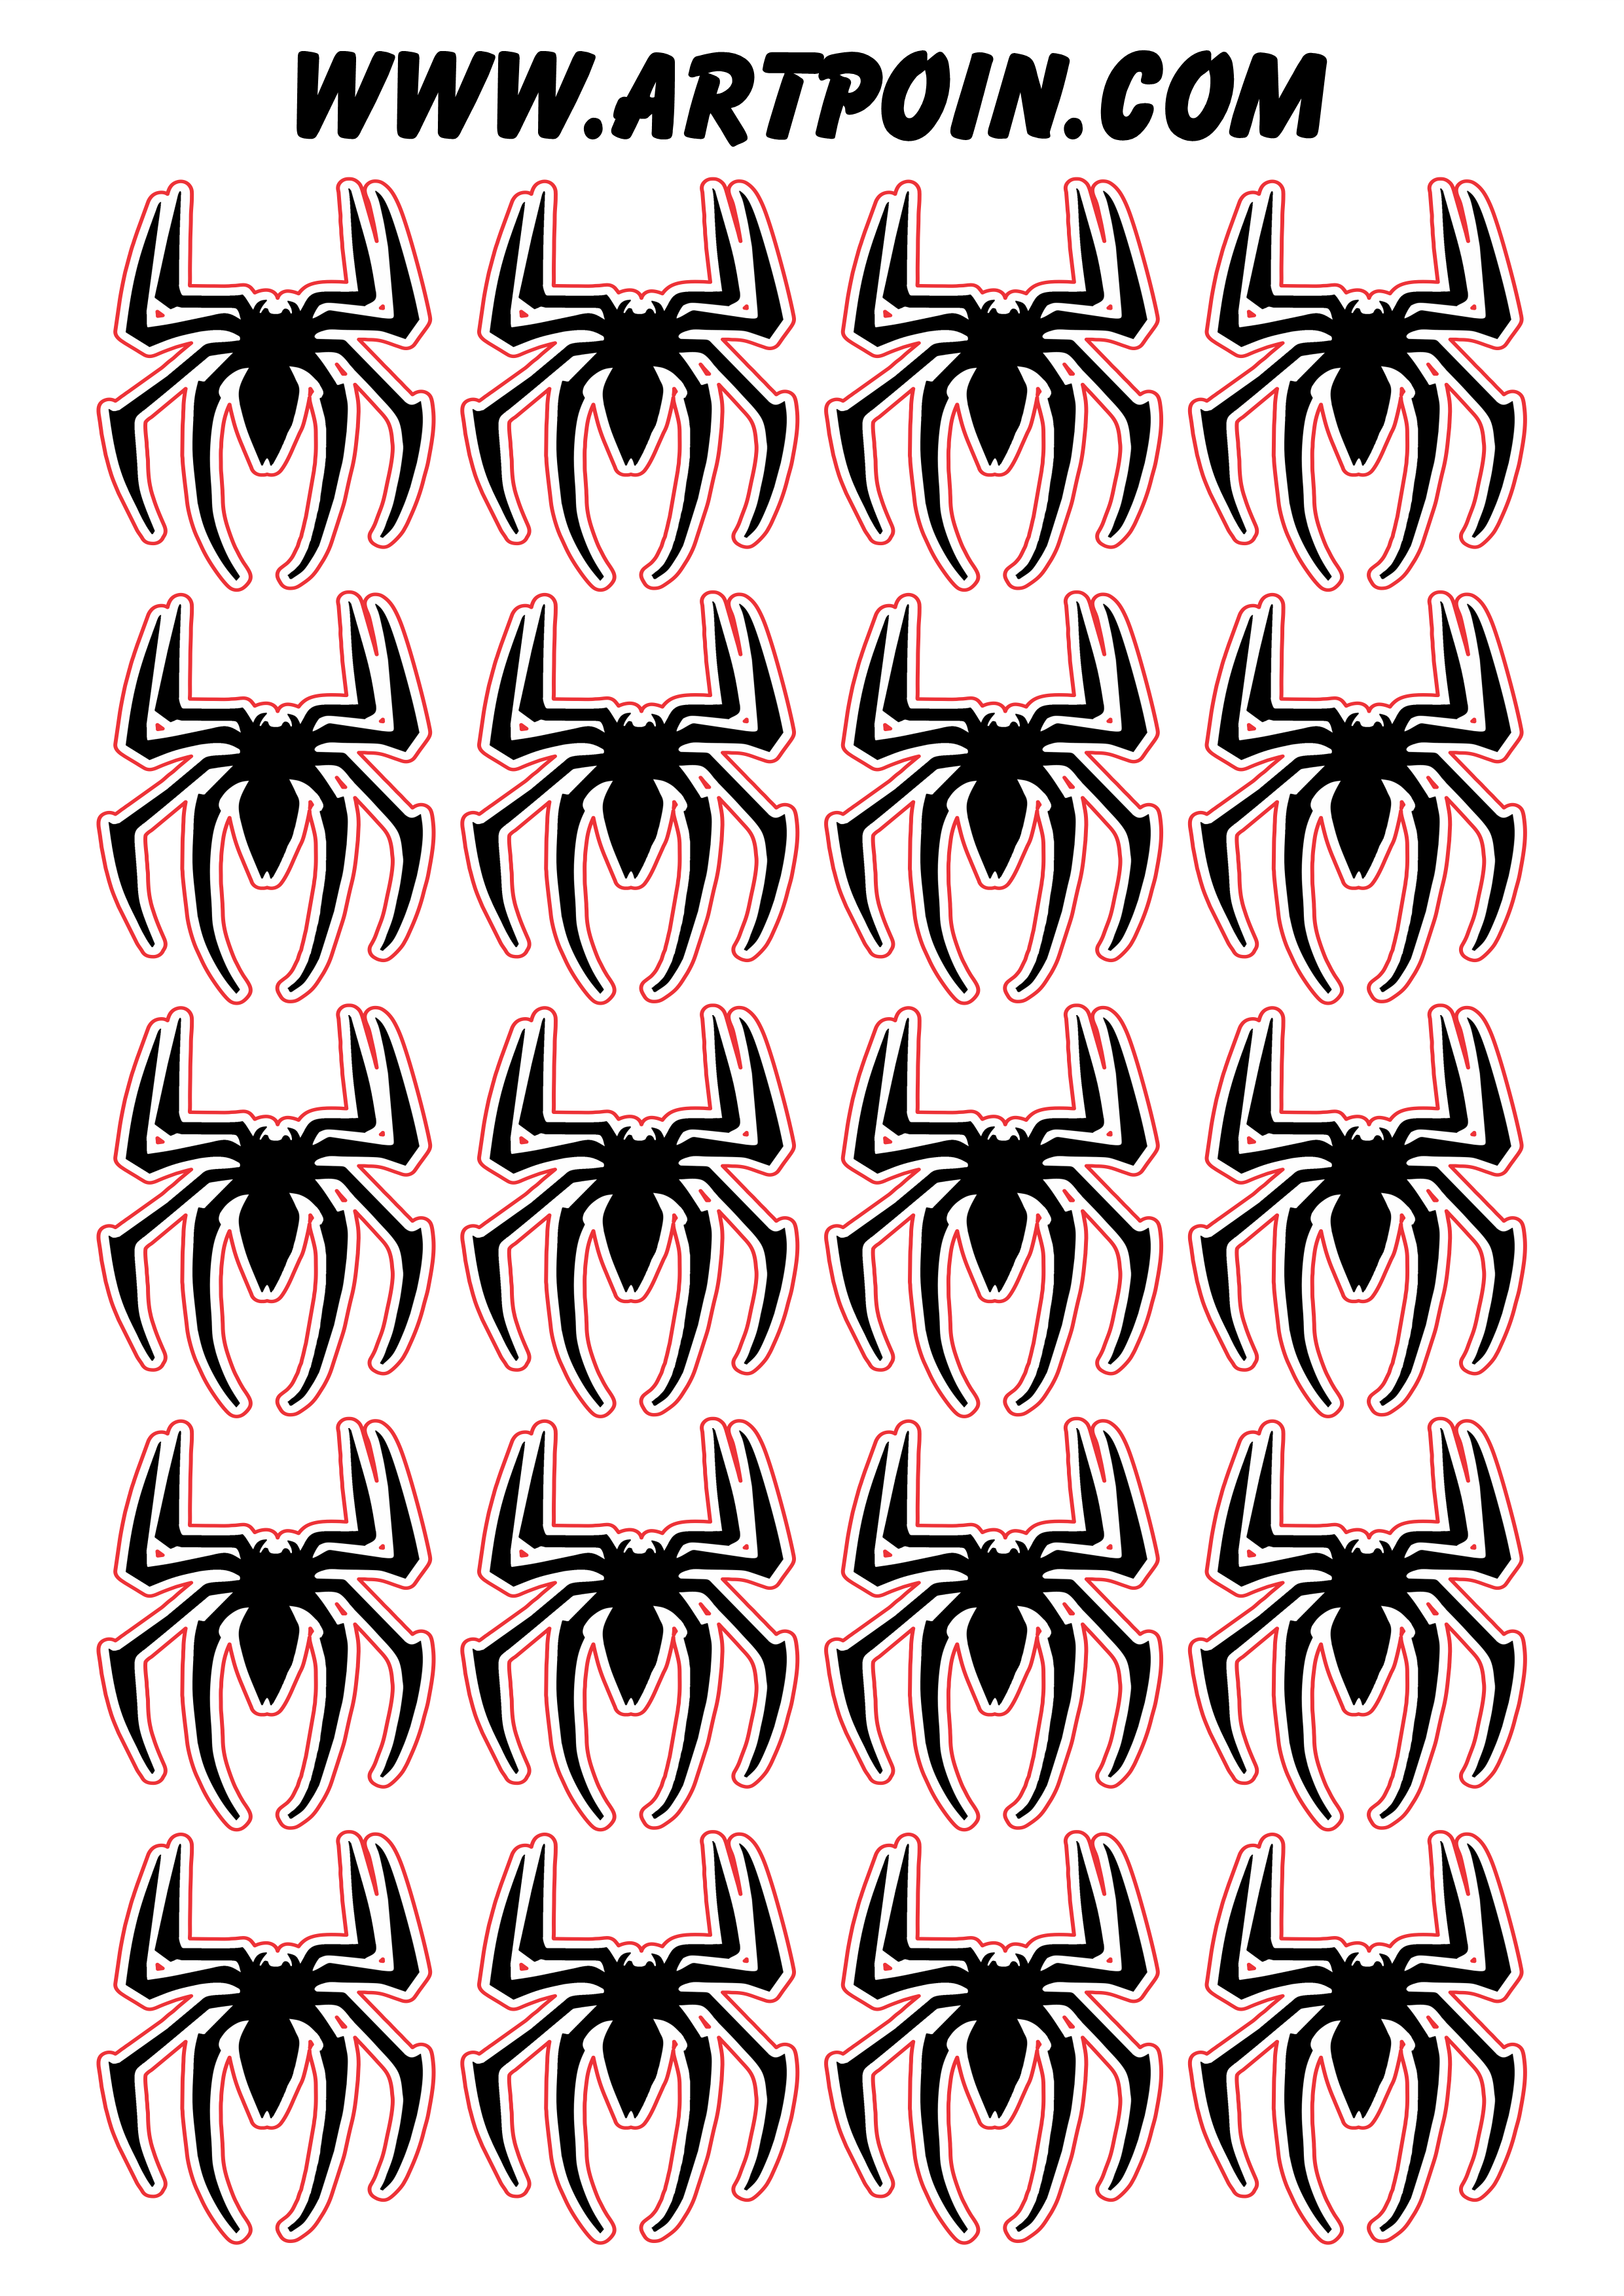 Homem aranha spider man adesivo tag sticker logo imagens com contorno png